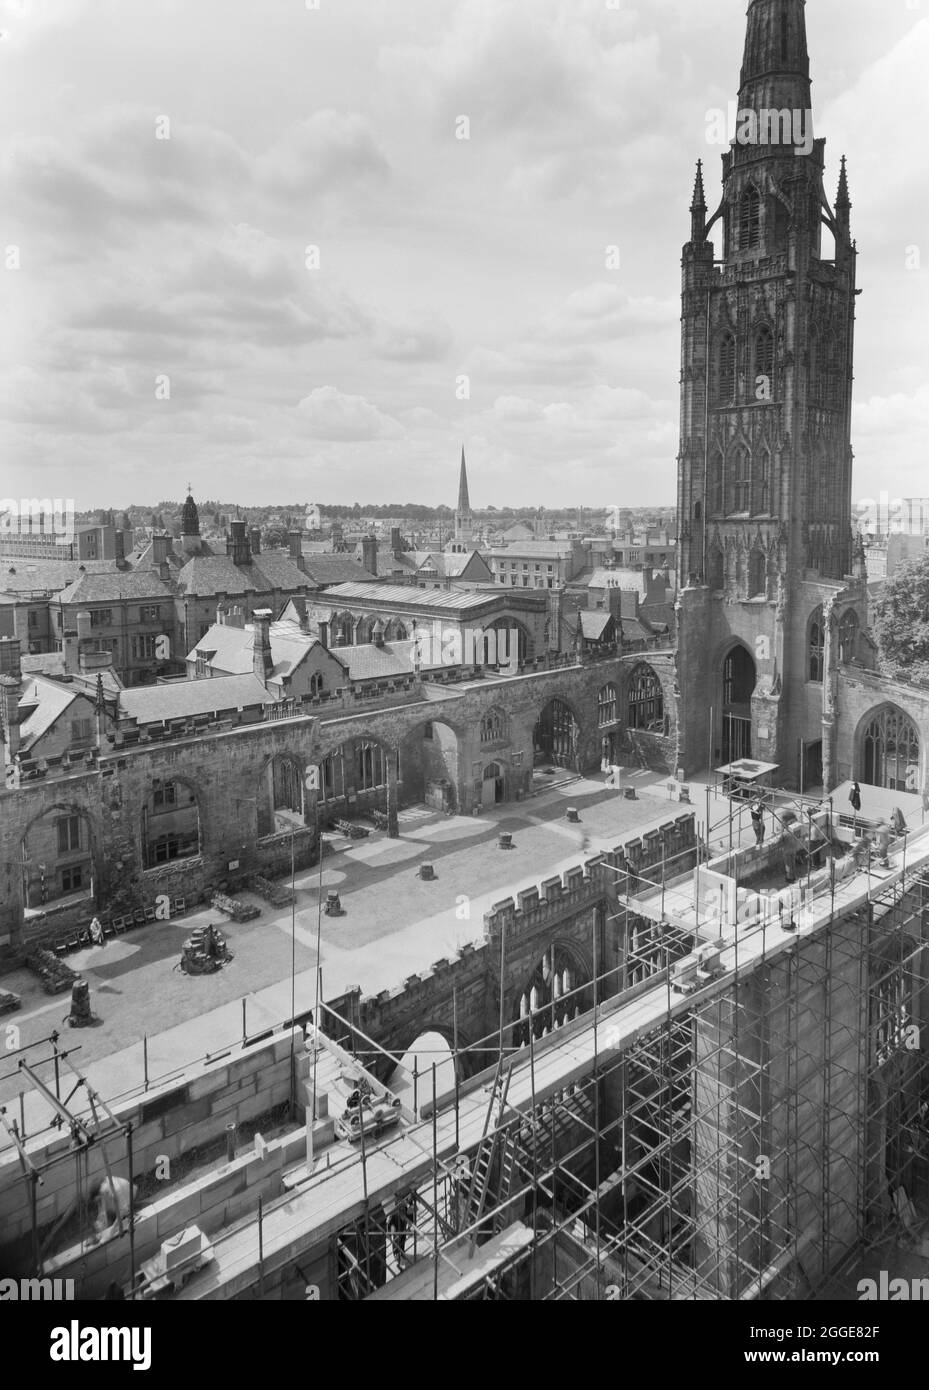 Ein Blick nach Südwesten über die Ruinen der Kathedrale St. Michael vom Dach der neuen Kathedrale von Coventry aus, der im Vordergrund einen Teil der Baustelle neben der alten Kathedrale zeigt. Nach dem Bombenangriff auf die Kathedrale von Coventry im November 1940 wurde 1950 ein Wettbewerb gestartet, um einen Entwurf für eine neue Kathedrale zu finden. Das Siegerdesign stammt von Sir Basil Spence (1907-1976) aus einem von über 200 eingereichten Designs. Die Bauarbeiten fanden zwischen Mitte der 1950er und 1962 statt. Am 23. März 1956 legte Königin Elisabeth II. Den Grundstein. Stockfoto